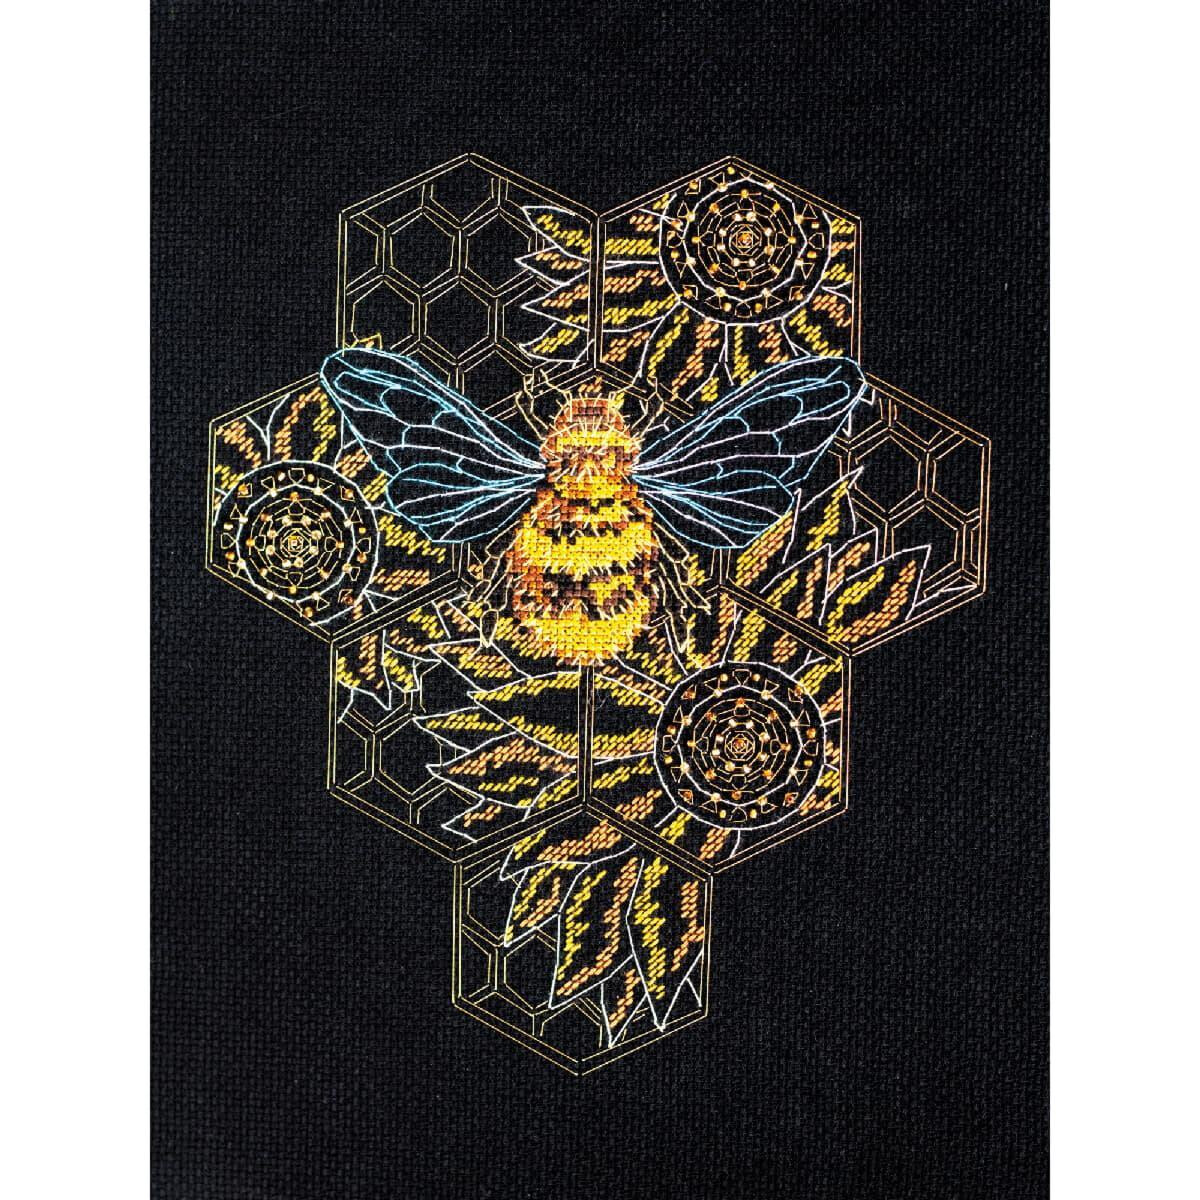 Abris Art counted cross stitch kit "Bee...